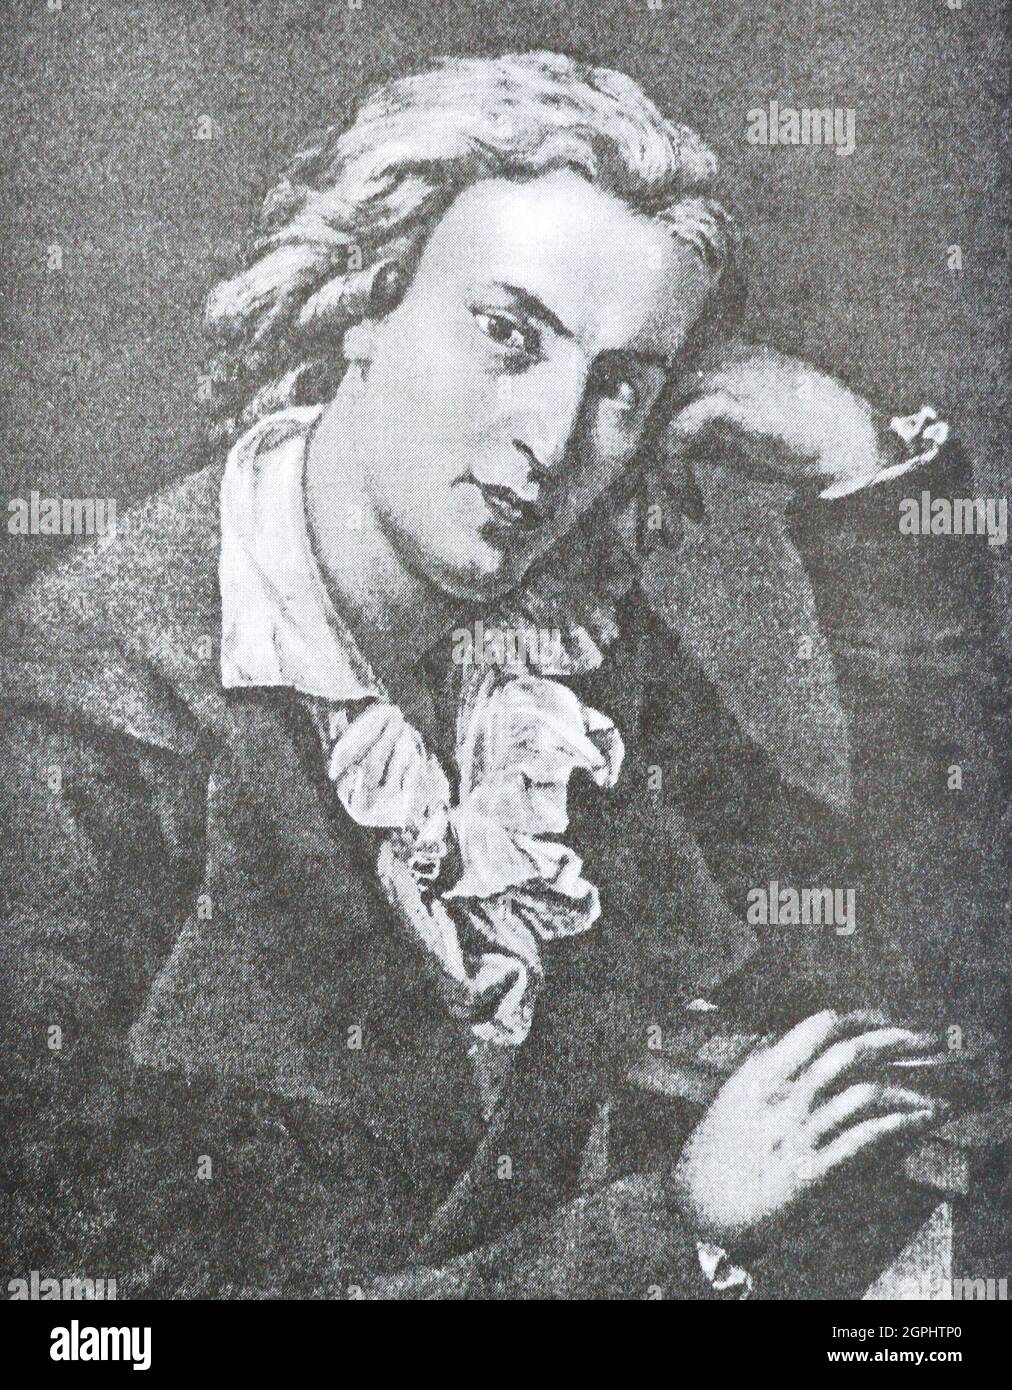 Johann Christoph Friedrich (von) Schiller (1759-1805) war ein deutscher Dramatiker, Dichter und Philosoph. In den letzten siebzehn Jahren seines Lebens (1788-1805) entwickelte Schiller eine produktive, wenn auch komplizierte Freundschaft mit dem bereits berühmten und einflussreichen Johann Wolfgang von Goethe. Sie diskutierten häufig über Fragen der Ästhetik, und Schiller ermutigte Goethe, Arbeiten zu beenden, die er als Skizzen hinterlassen hatte. Stockfoto